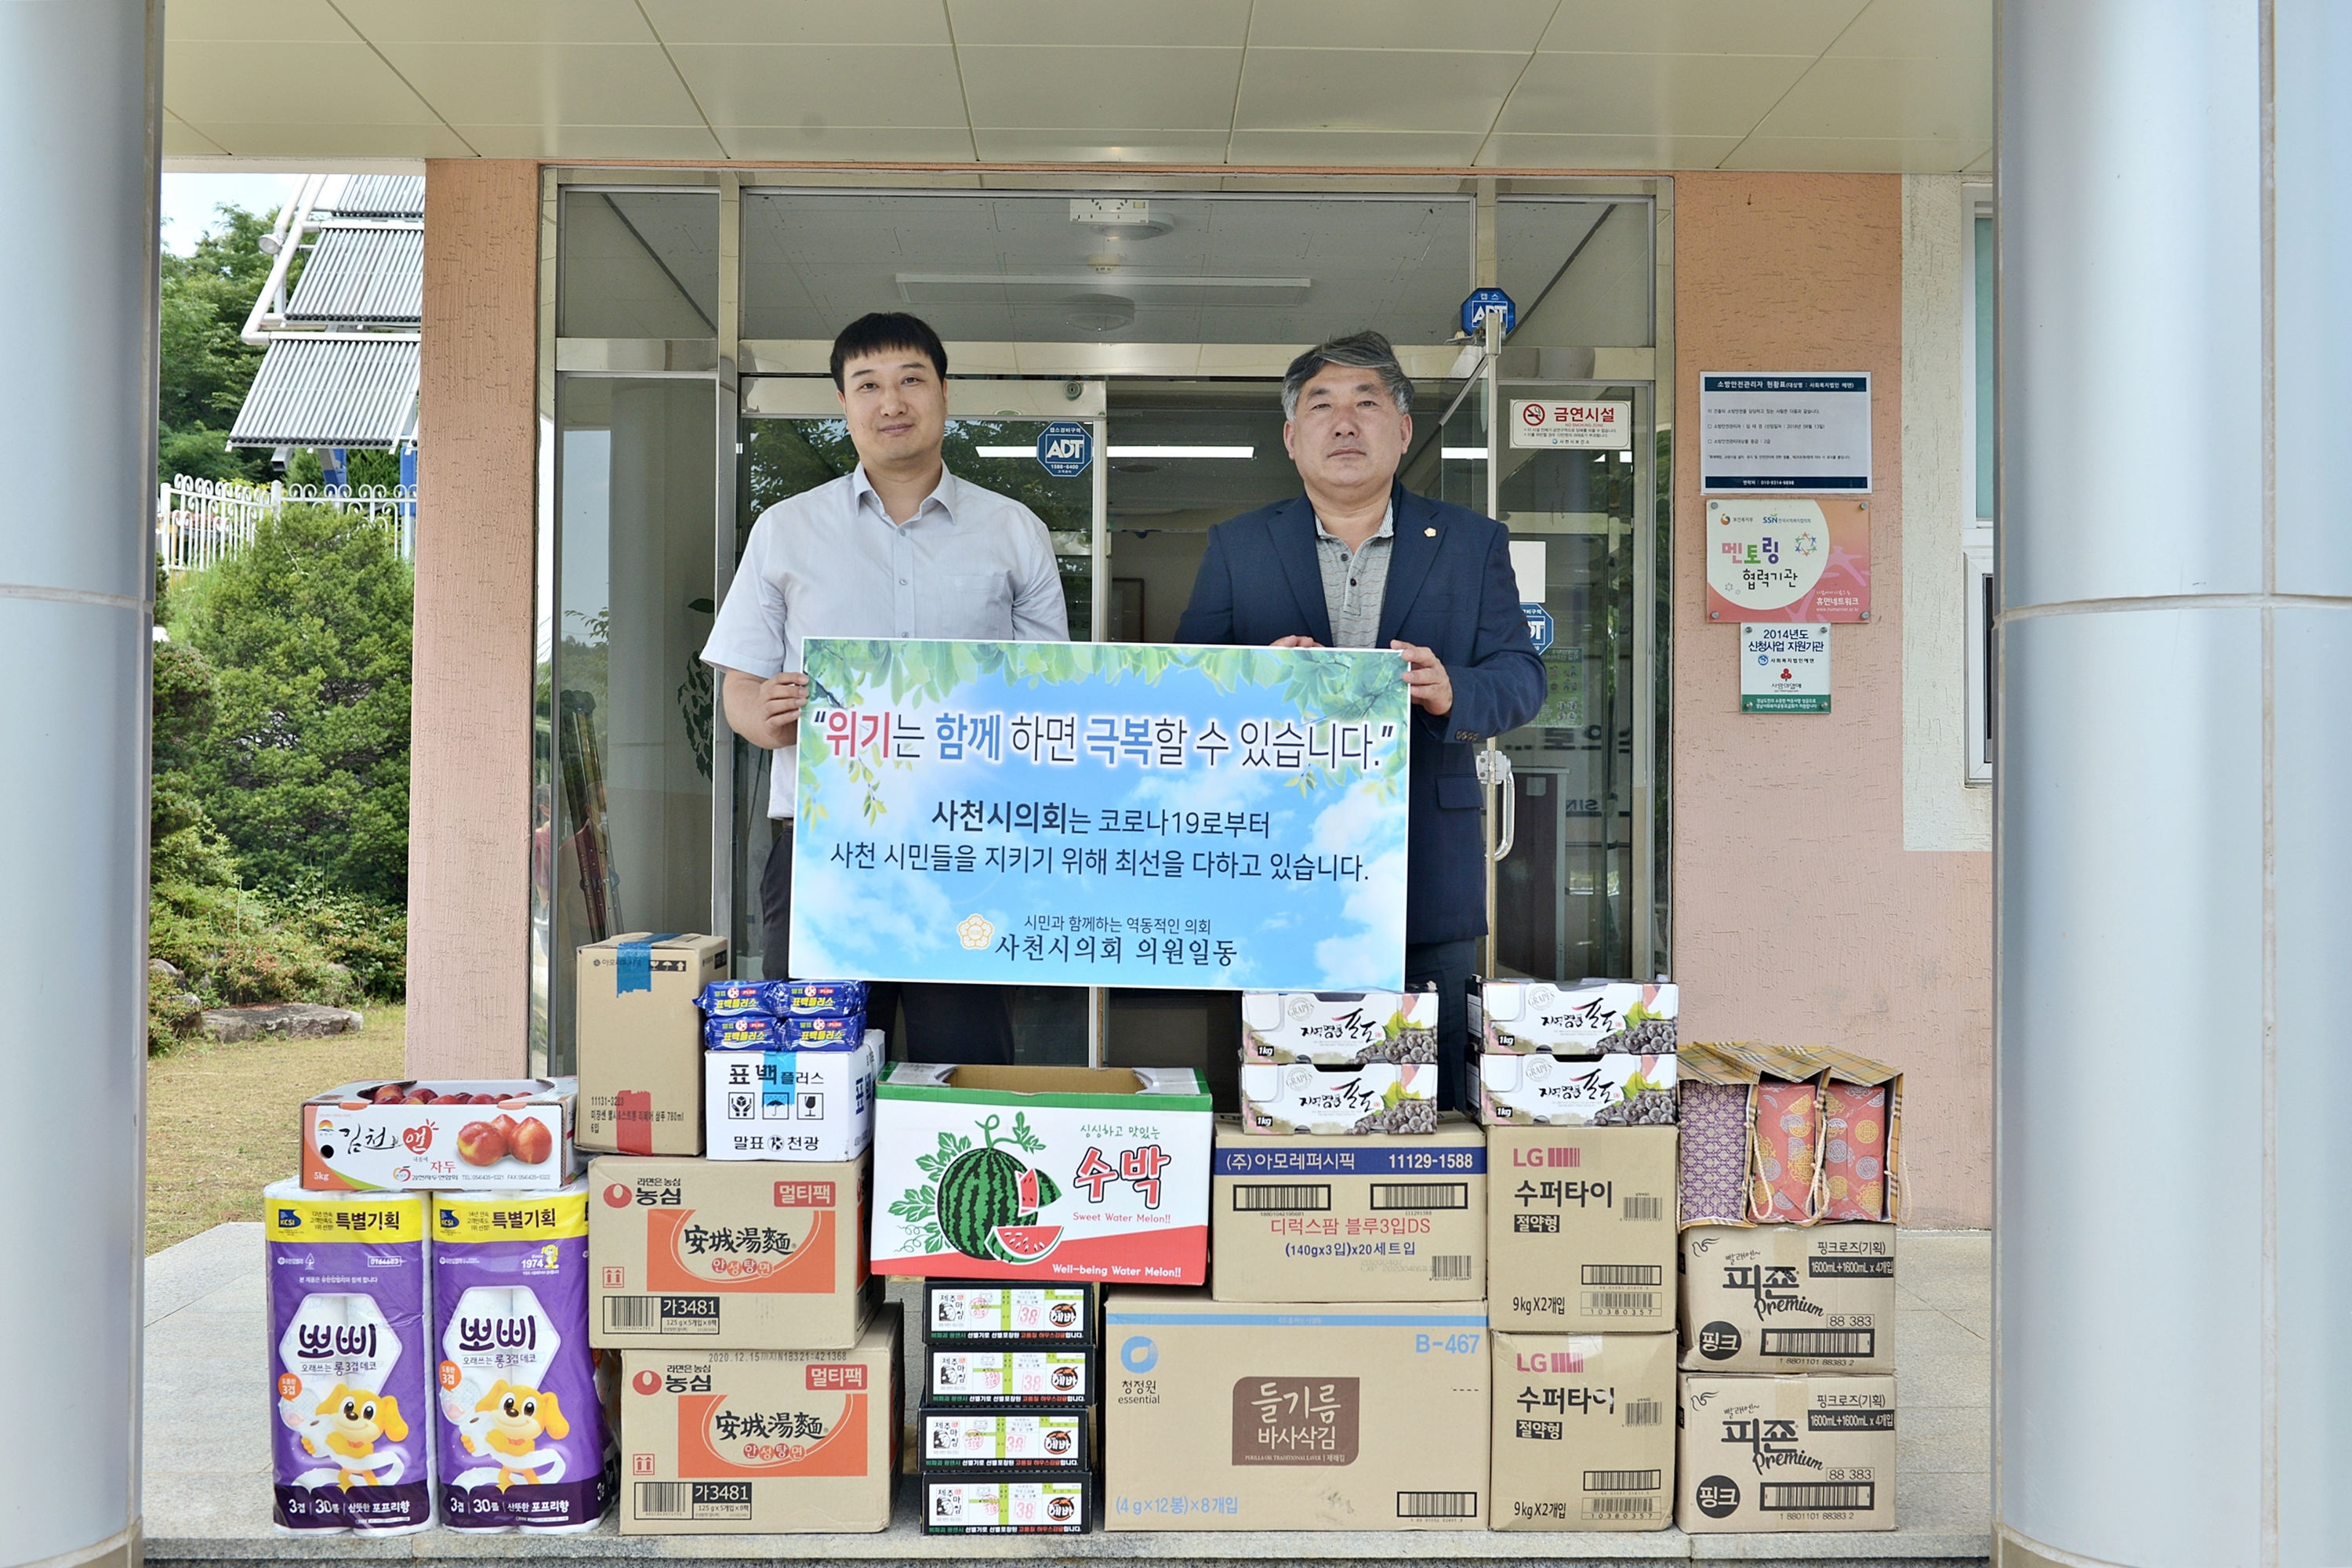 사천시의회 의원 정부형 긴급재난지원금 기부를 통한 물품 전달 - 2